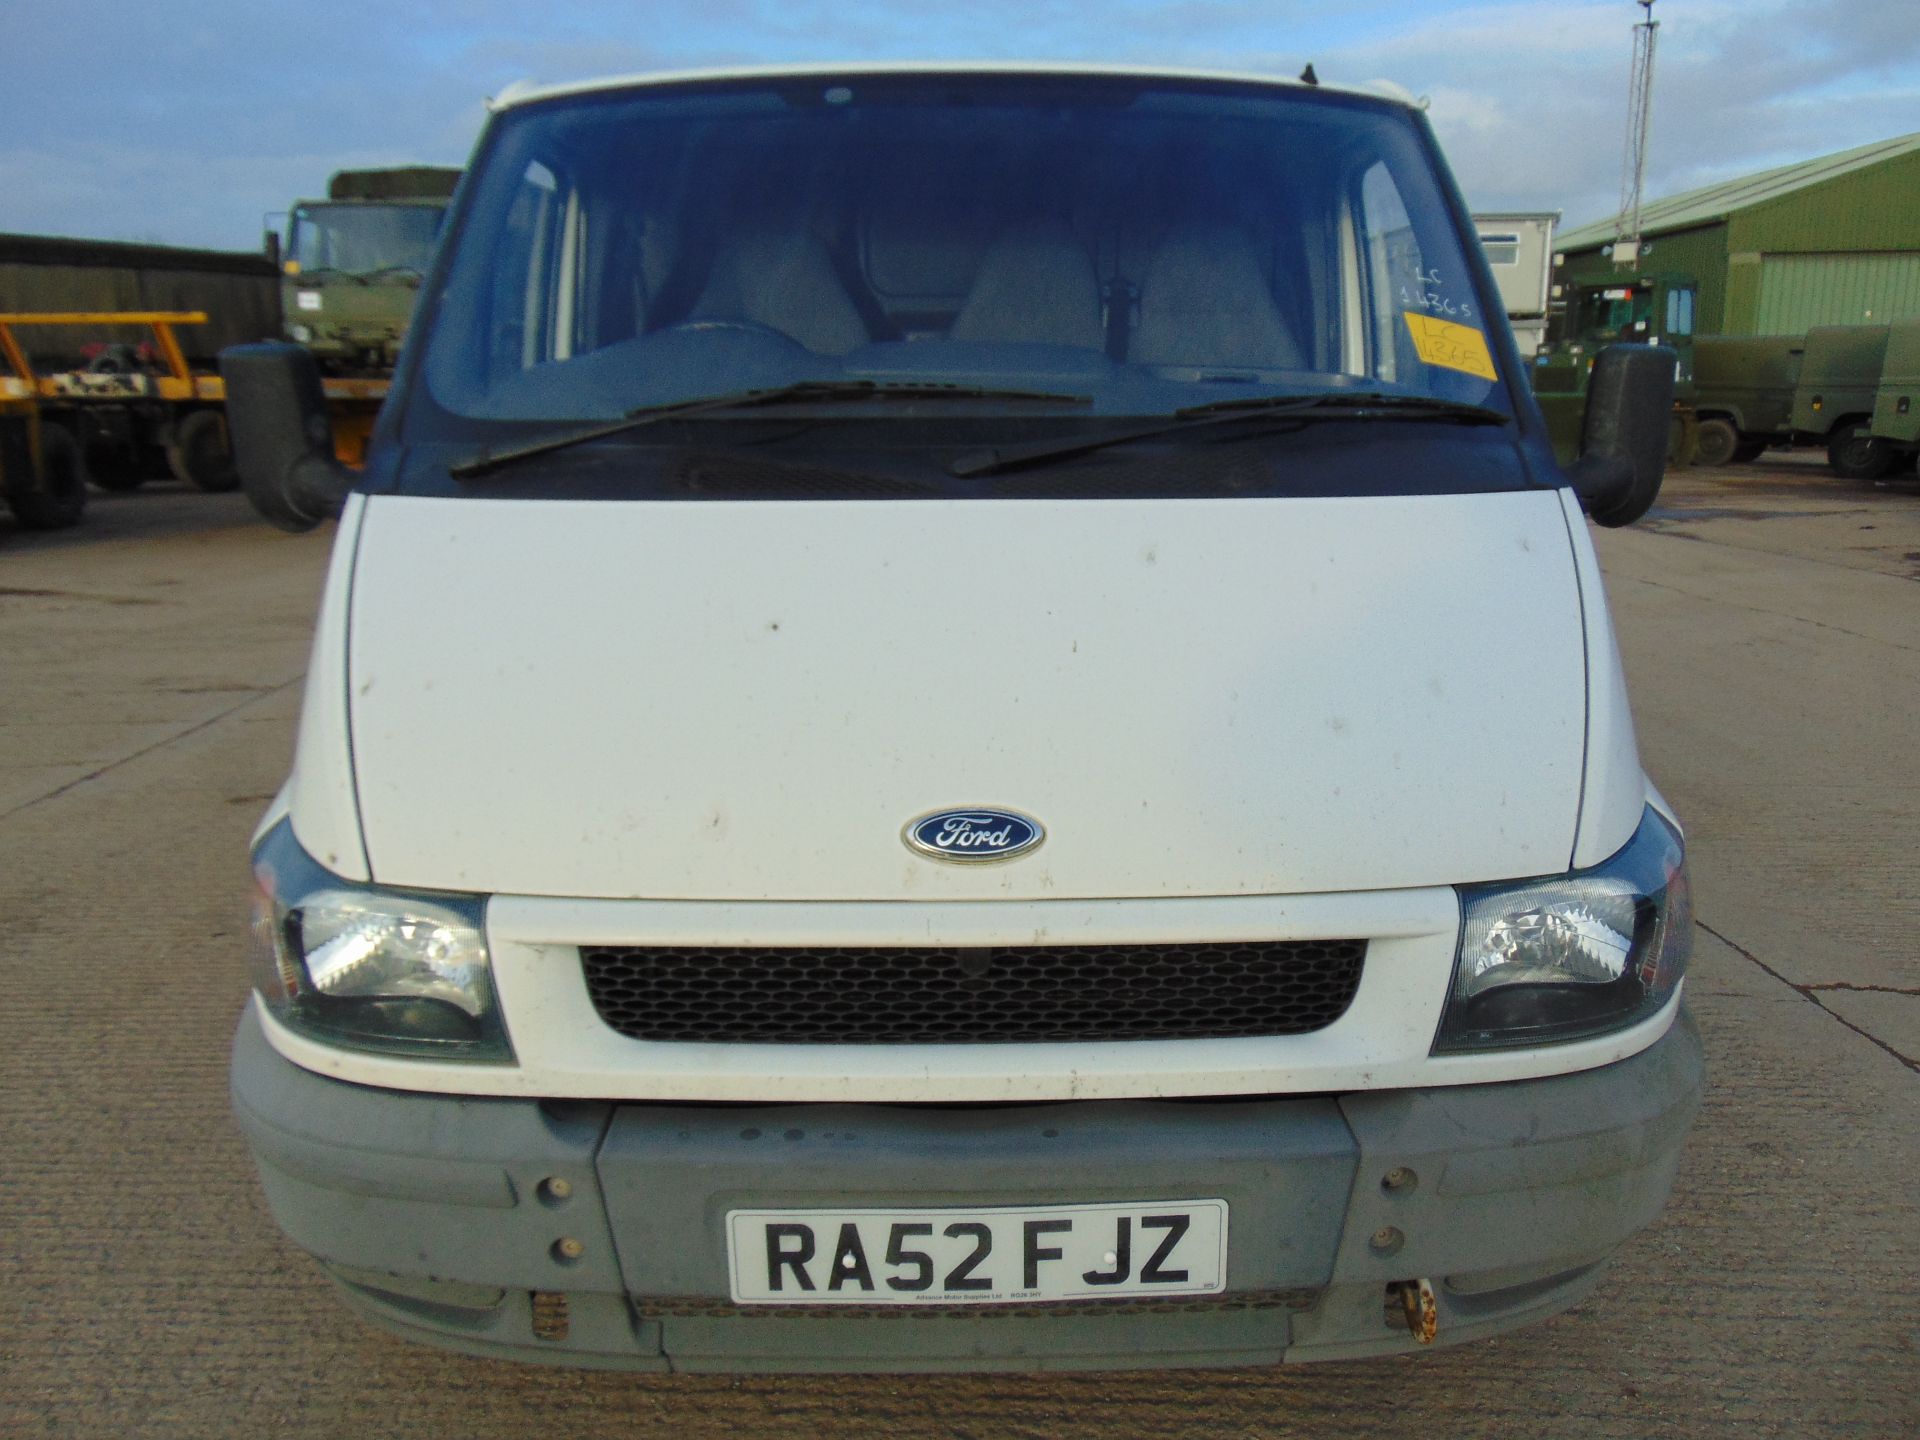 Ford Transit T260 Panel Van - Image 2 of 17